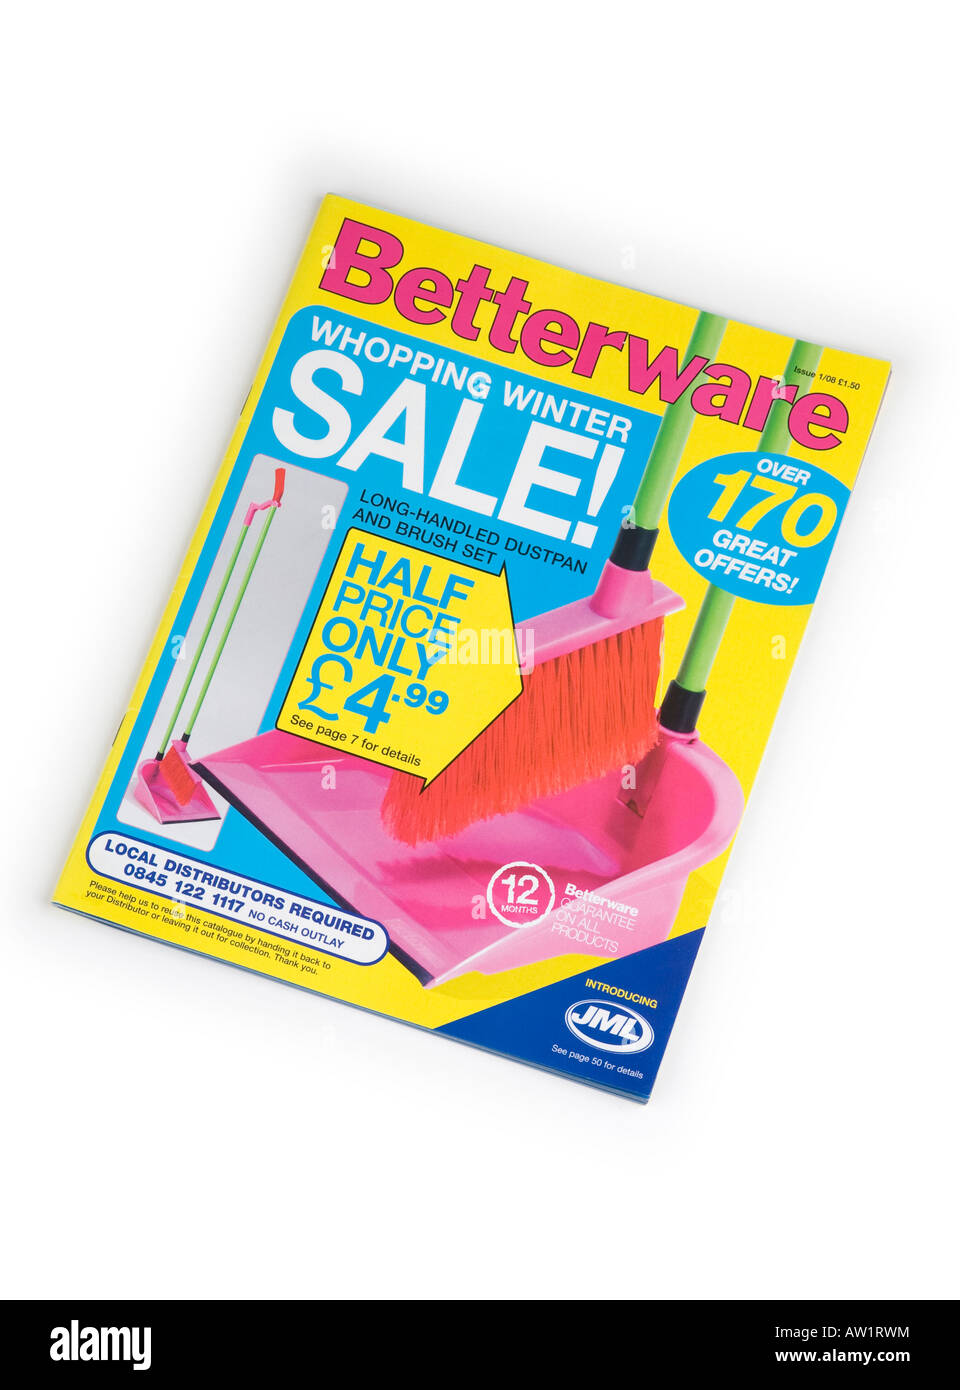 Betterware catalogue front cover, from  'door to door' sellers Stock Photo